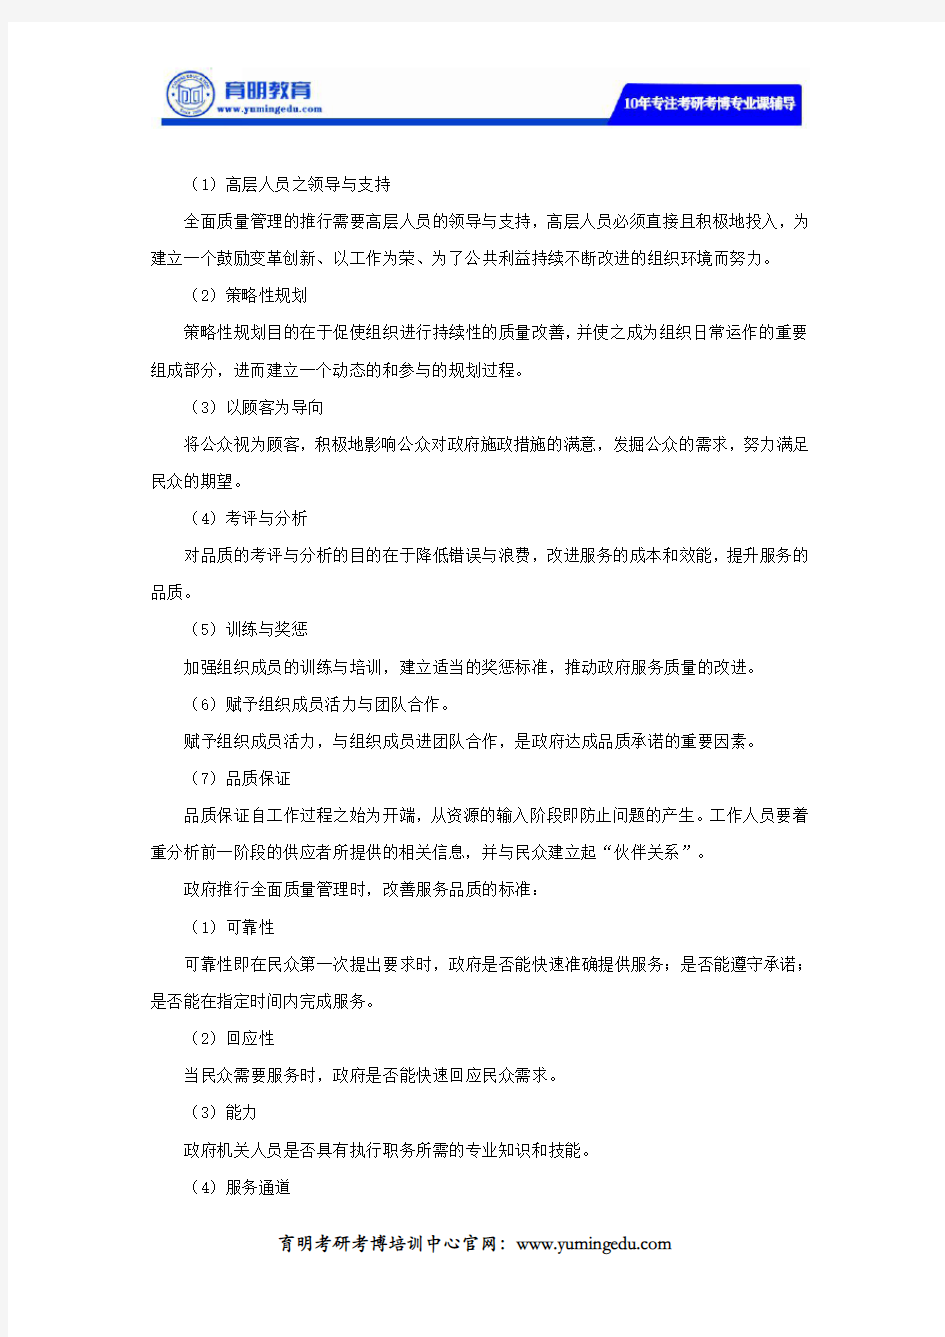 2019-2020年中共湖南省委党校公共管理硕士MPA考研复试参考书及面试问题预测